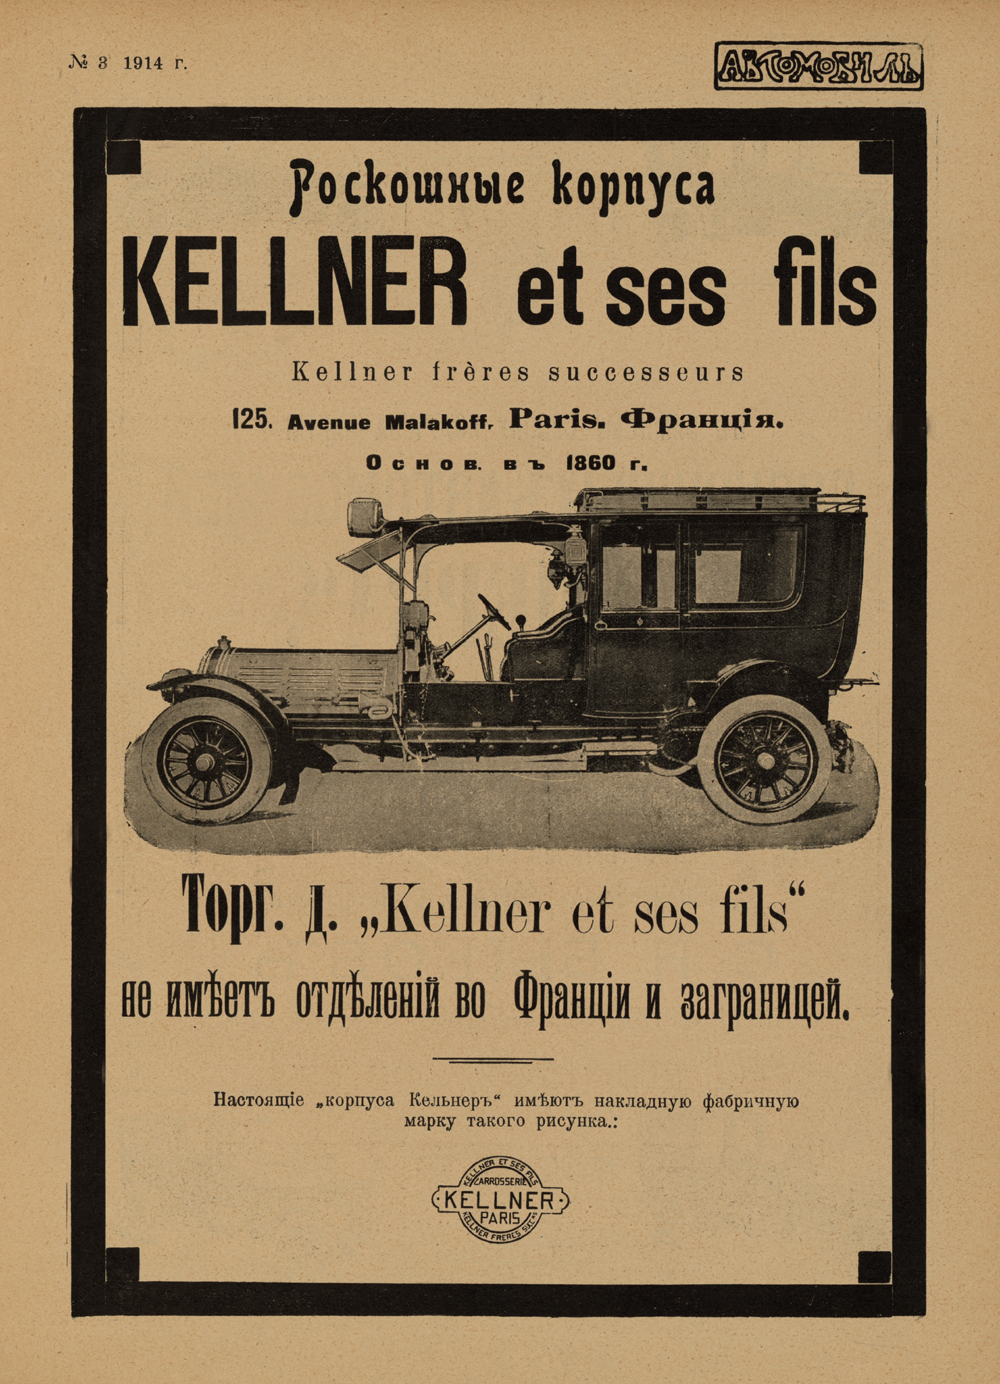 Реклама кузовной фирмы Kellner et ses fils из российского журнала «Автомобиль» №3 за 1914 год.